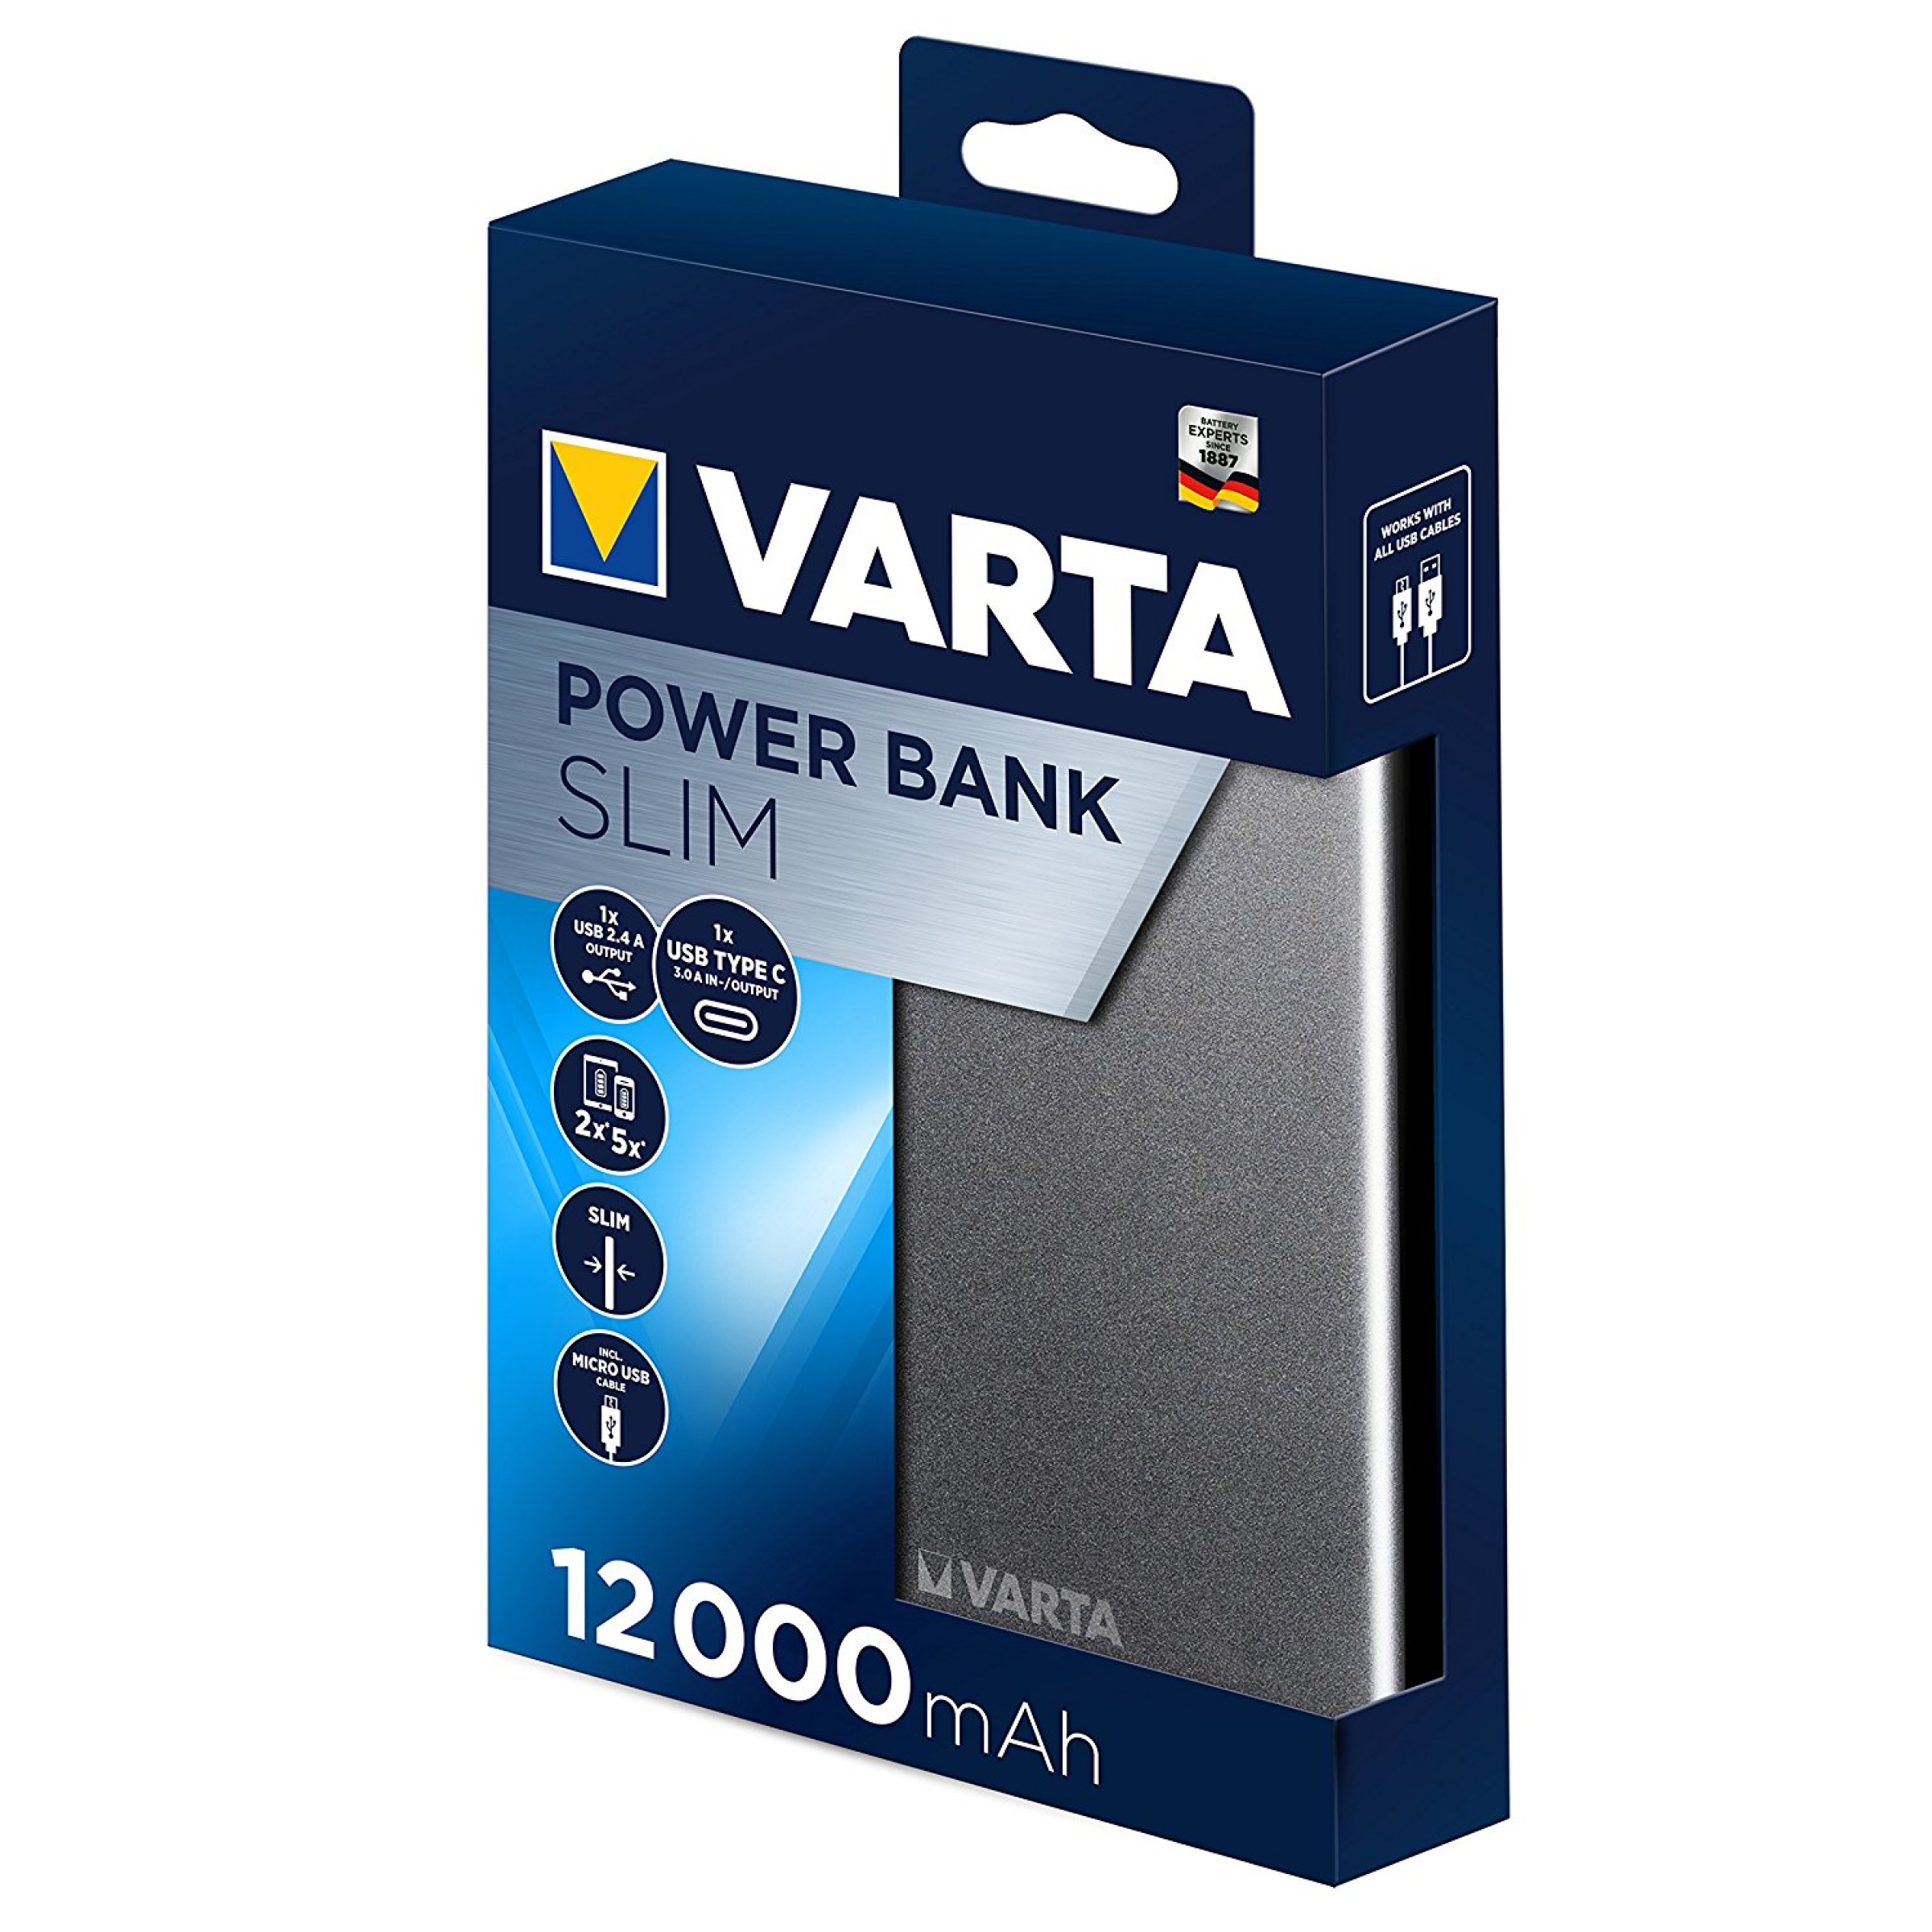 Varta  VARTA  Slim Power Bank 12000